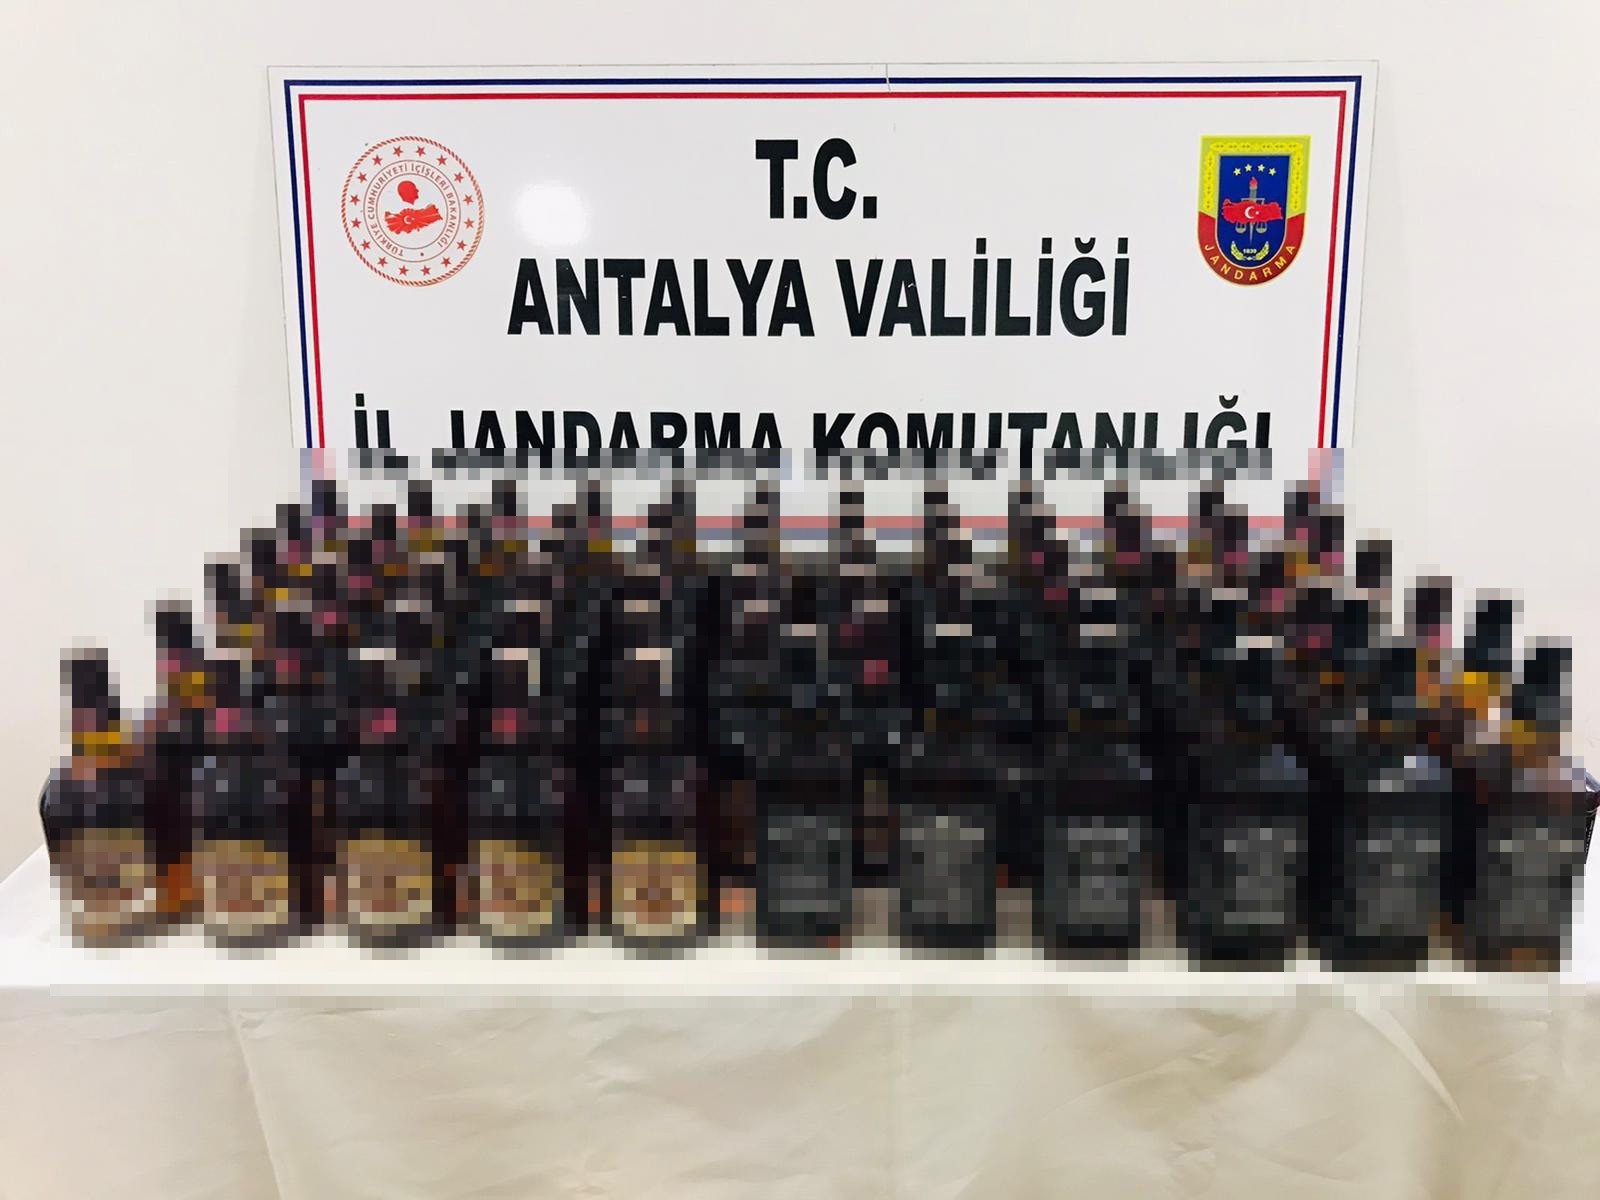 Antalya’da durdurulan bir araçtan piyasa değeri yaklaşık 30 bin TL olan  kaçak içki ele geçirildi